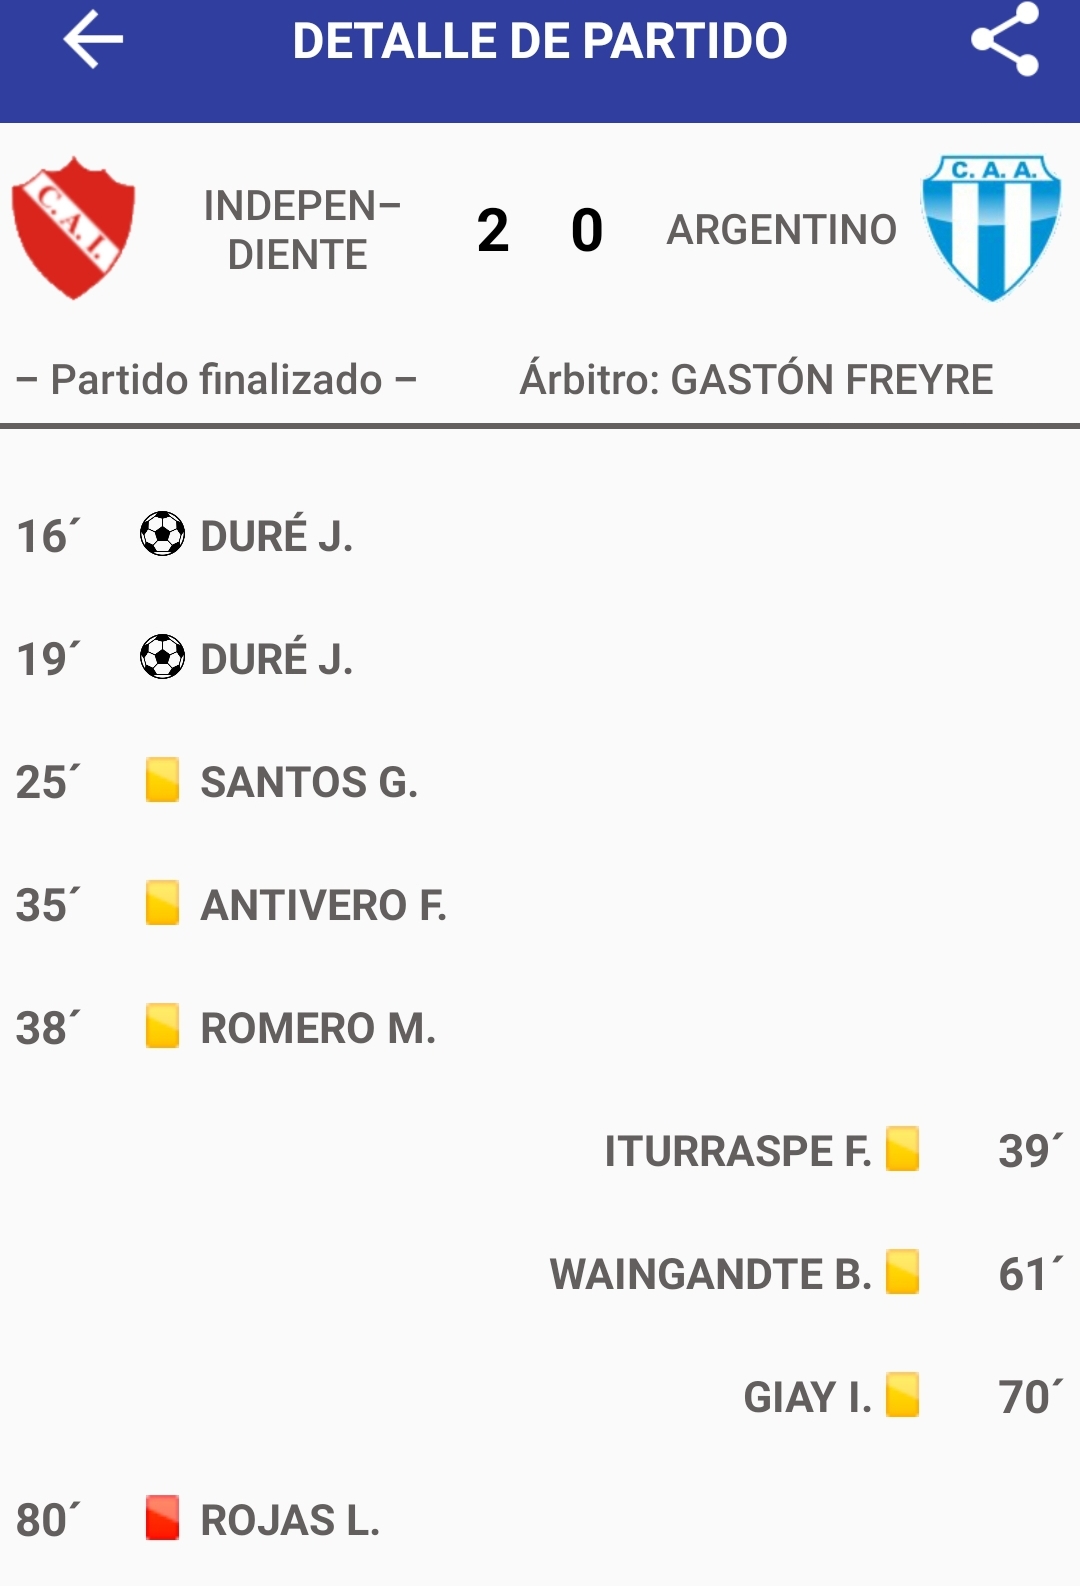 Independiente 2 - Argentino 0 (La síntesis)